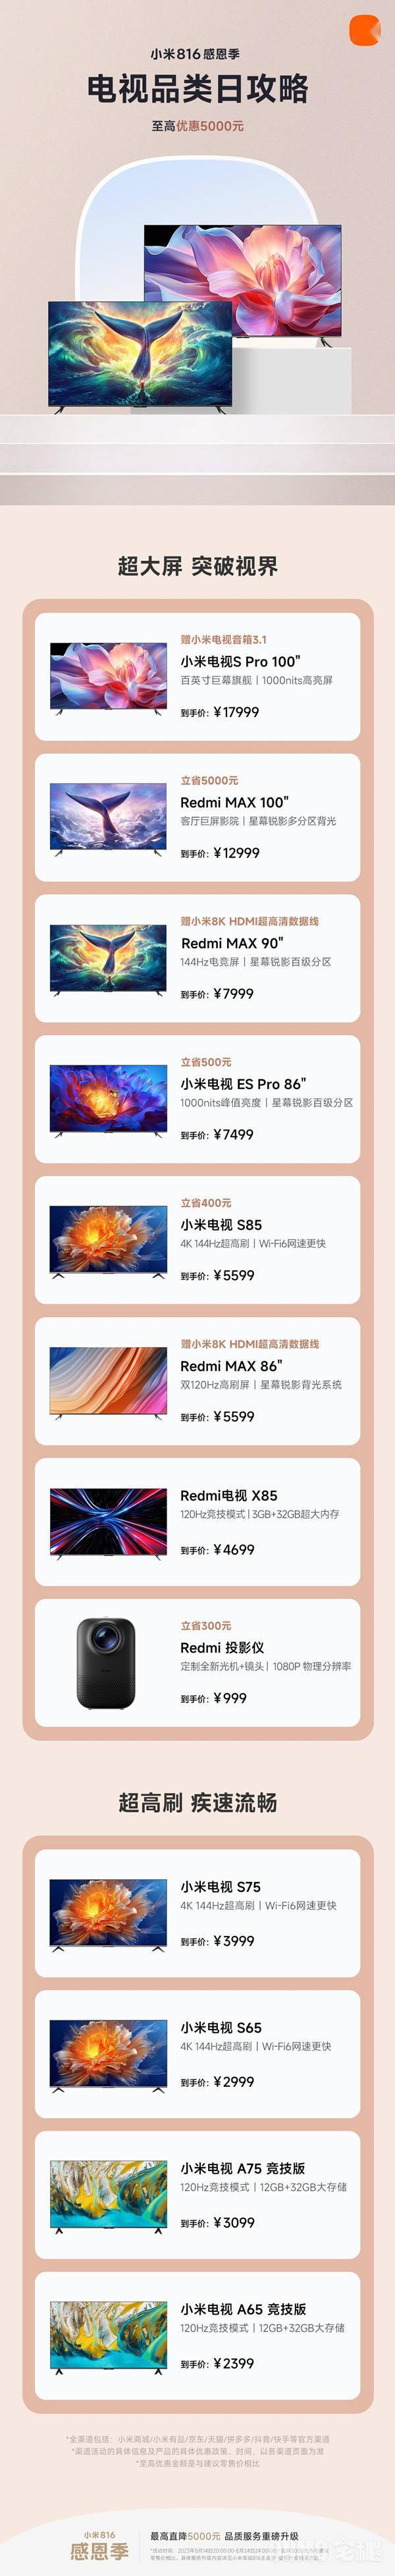 小米电视品类日开启 Redmi MAX 100英寸立省5000元 